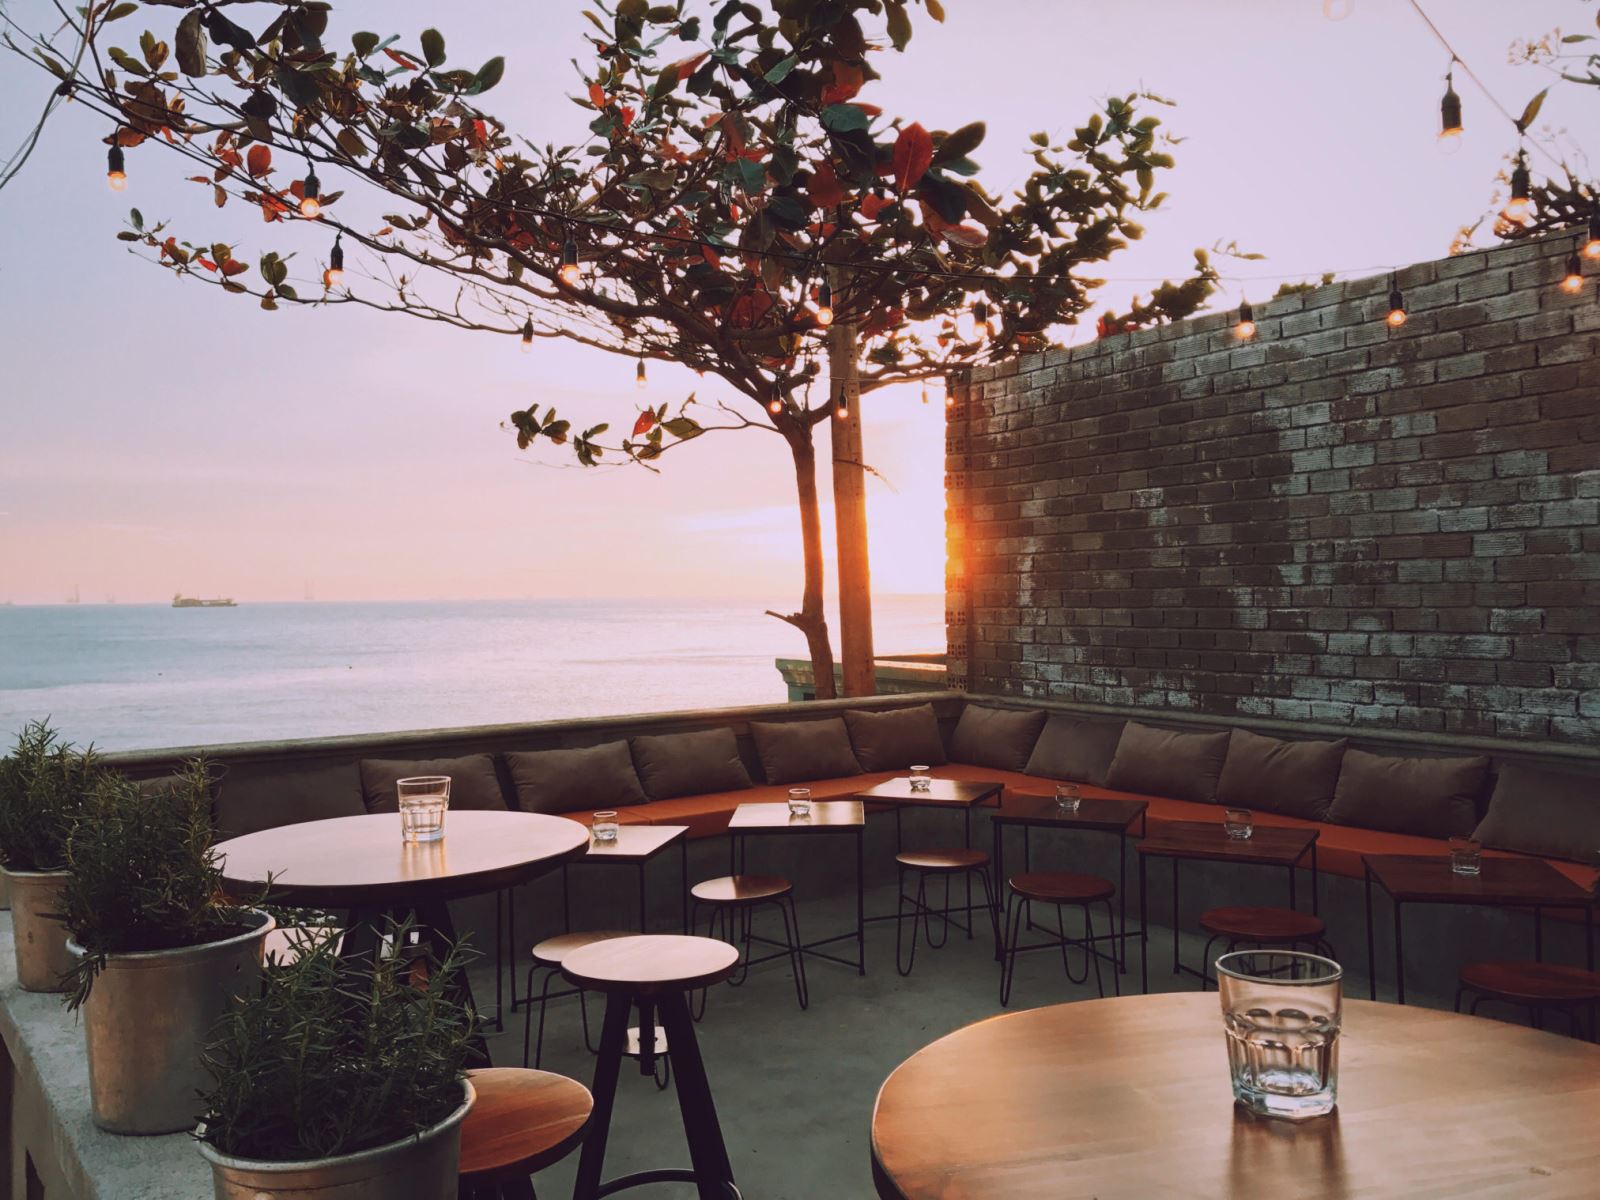 Quán cafe Vũng Tàu – thưởng thức tách cà phê nóng bên cạnh bãi biển cát trắng và cảm nhận gió biển mát lạnh của Vũng Tàu. Nơi đây còn là tổng hợp các đặc sản địa phương phục vụ cho bữa sáng ngon miệng của bạn.